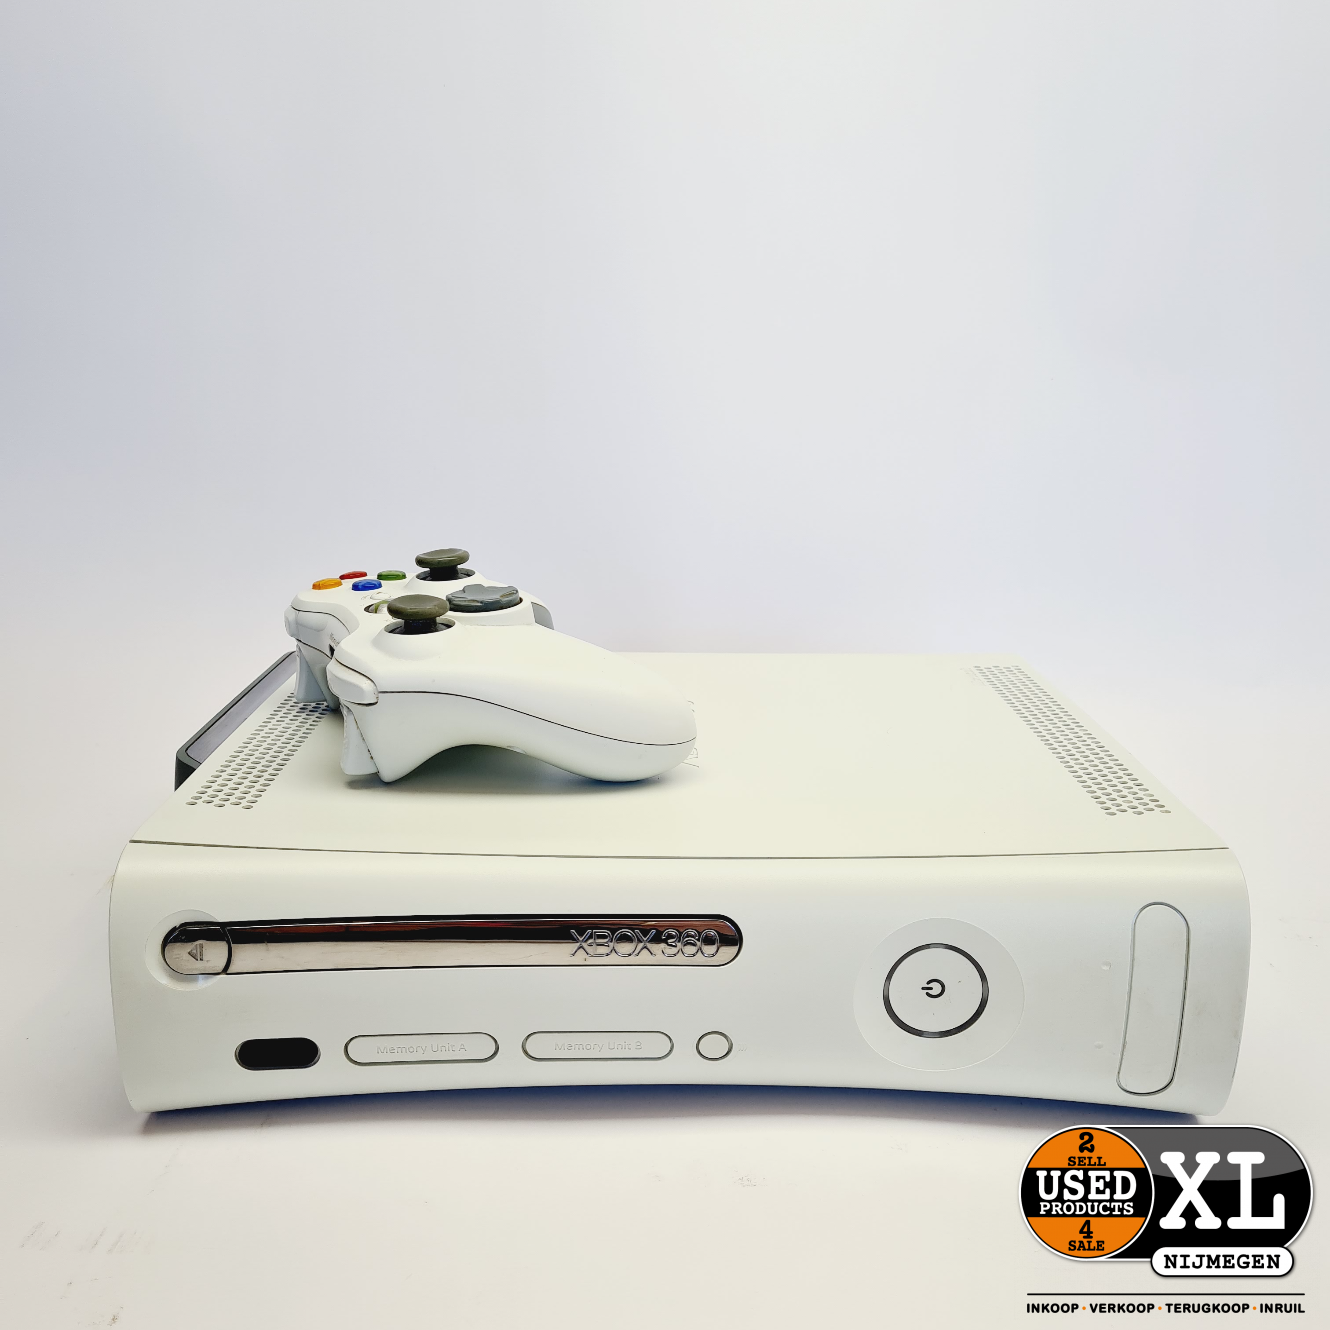 Verplicht thuis dealer Microsoft Xbox 360 Premium 20GB met Controller | Nette Staat - Used  Products Nijmegen XL